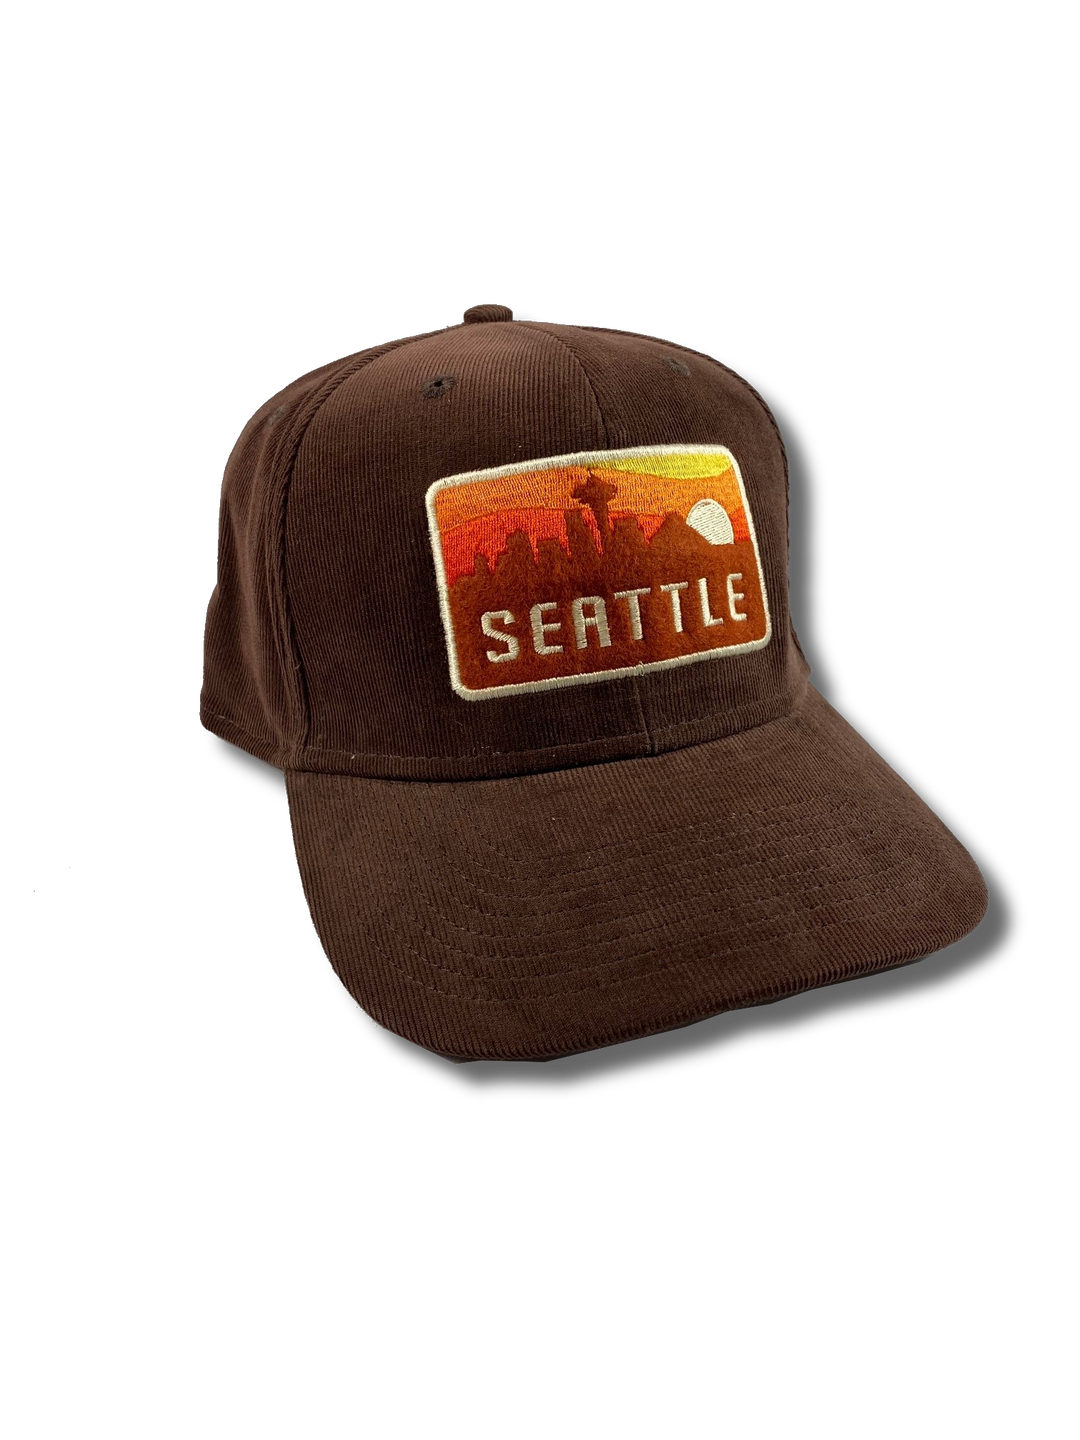 Seattle Skyline Sunset Hat